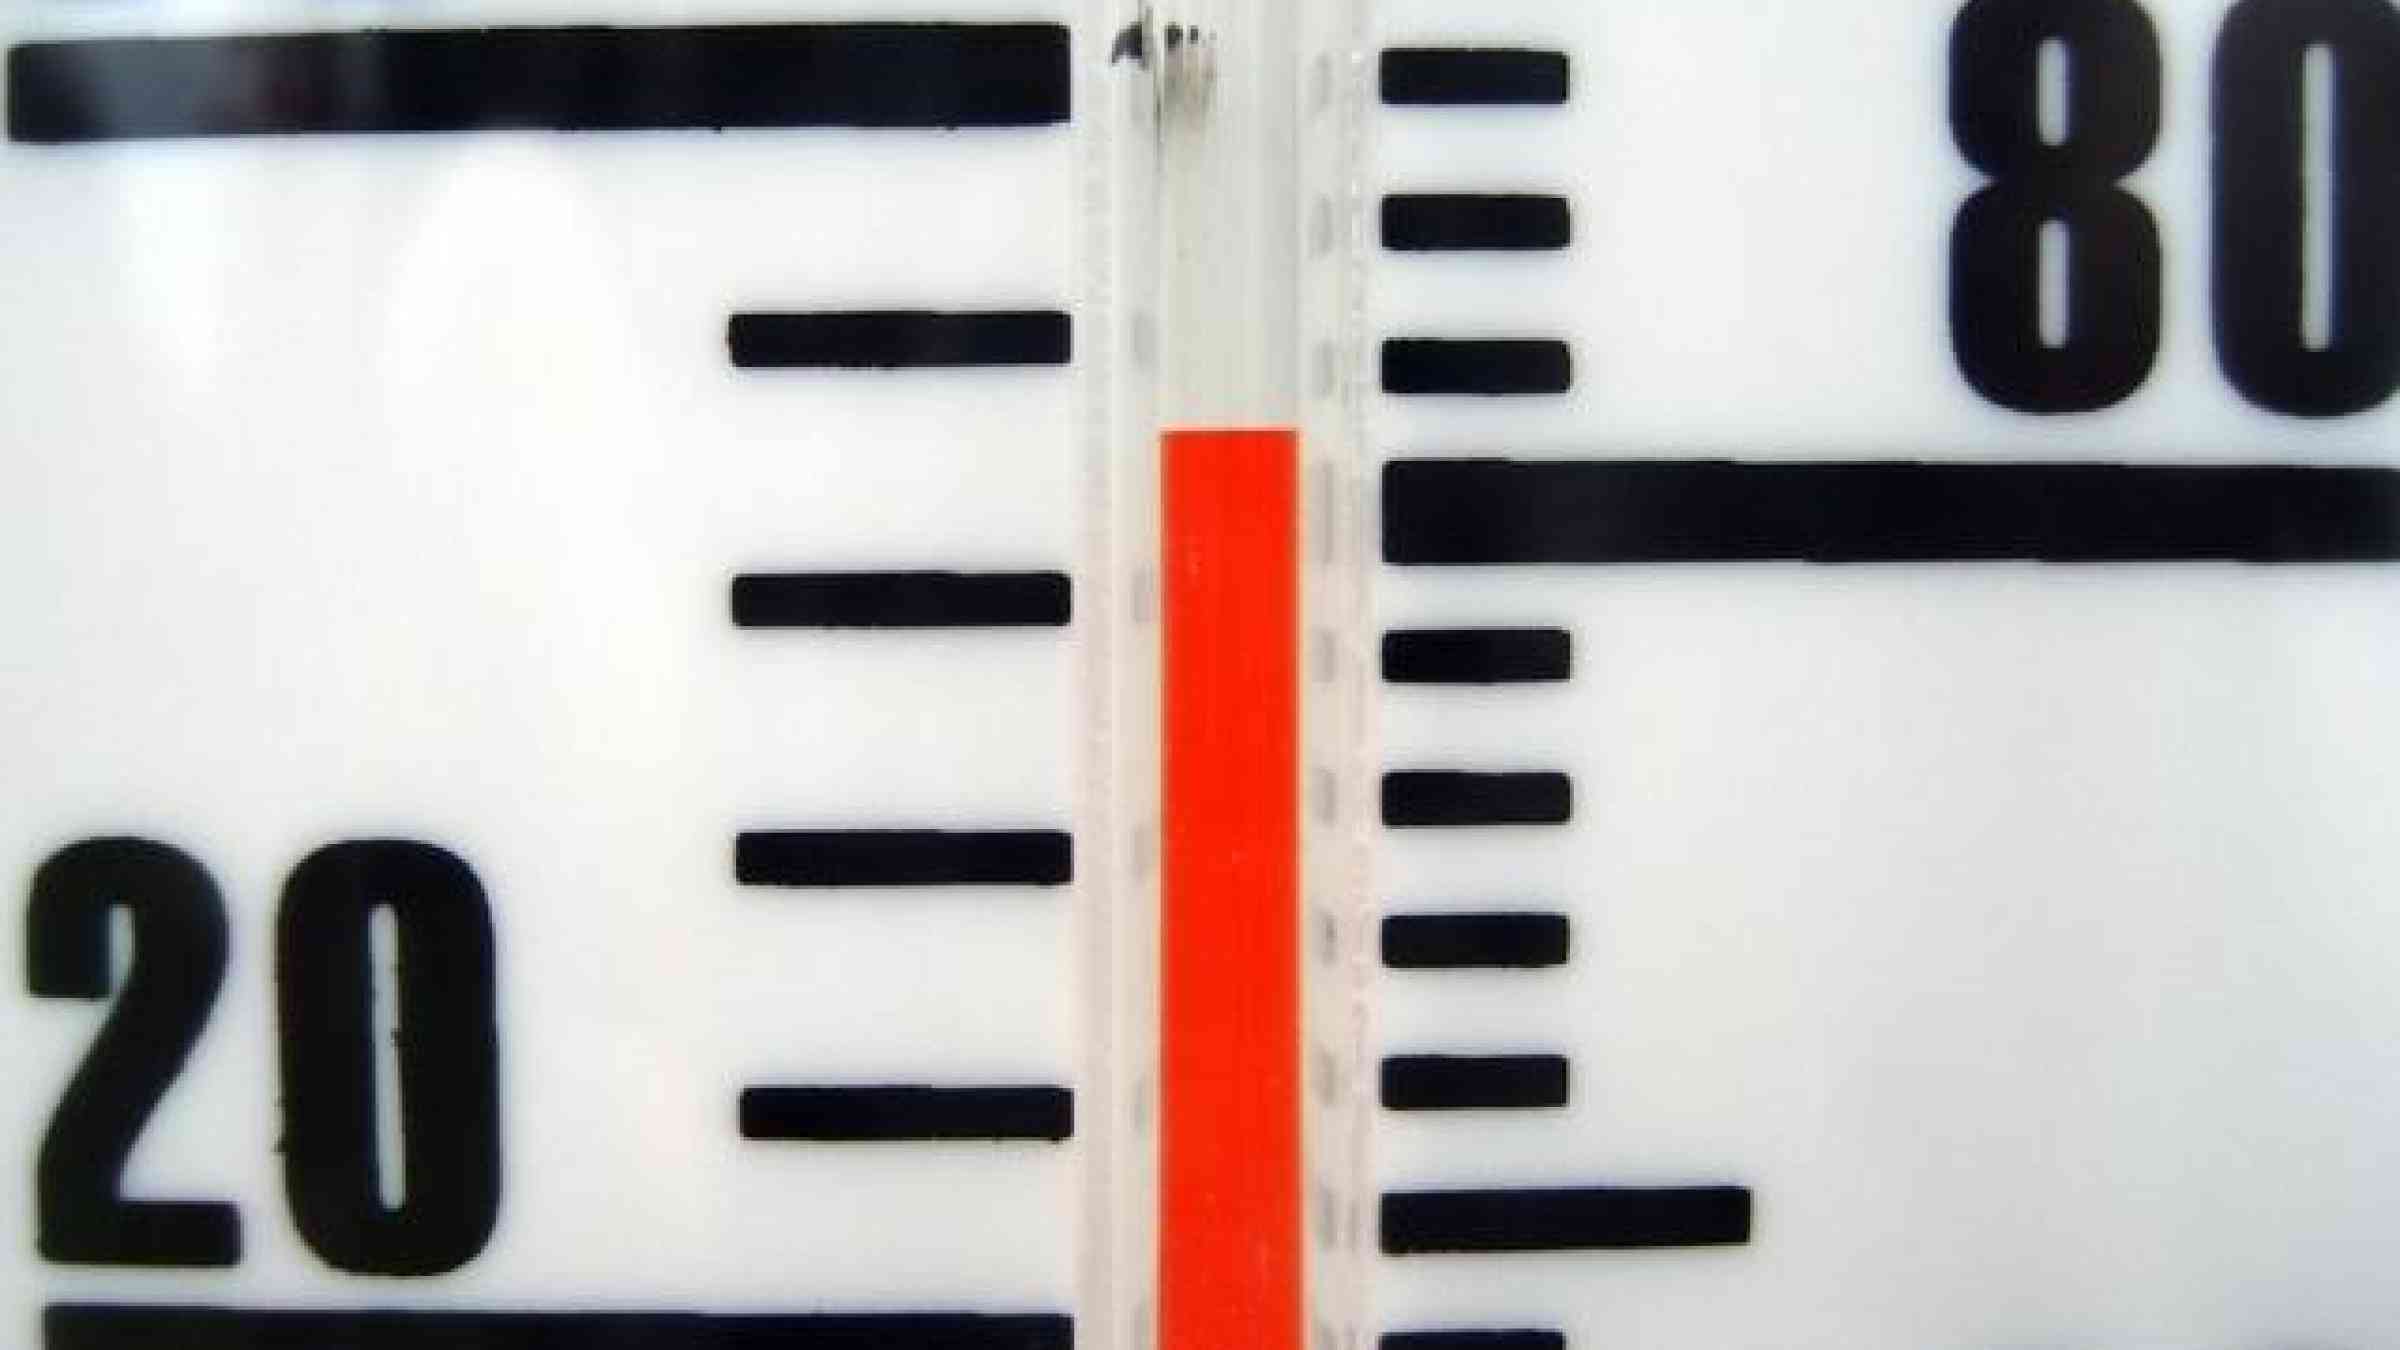 Temperature gauge (c) Petria Follett